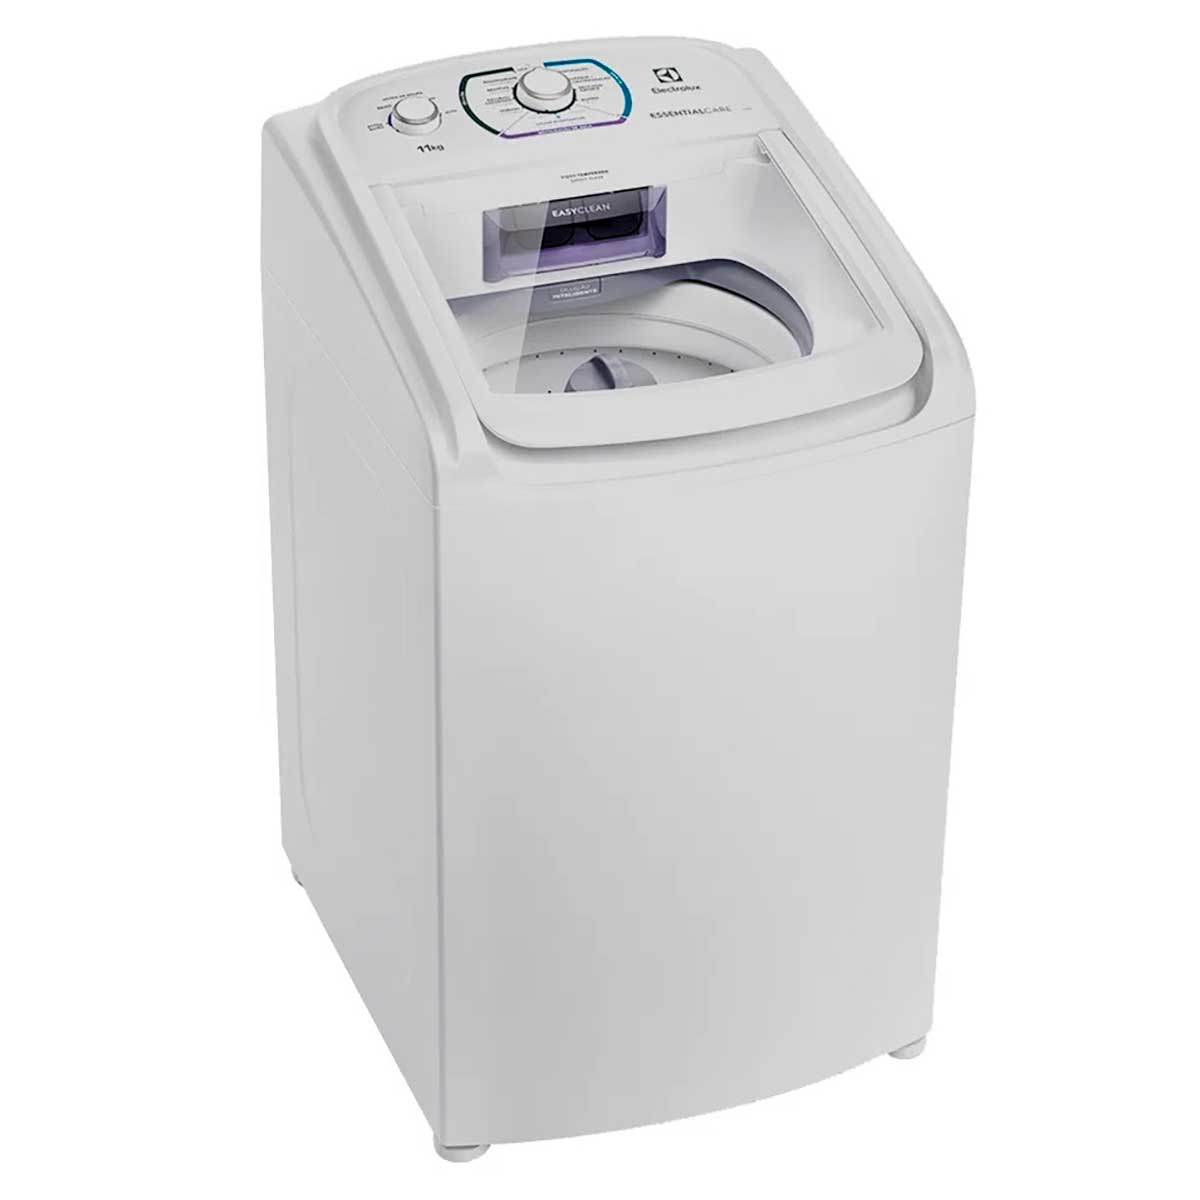 maquina-de-lavar-roupas-electrolux-11-kg-branca-les11-220v-1.jpg